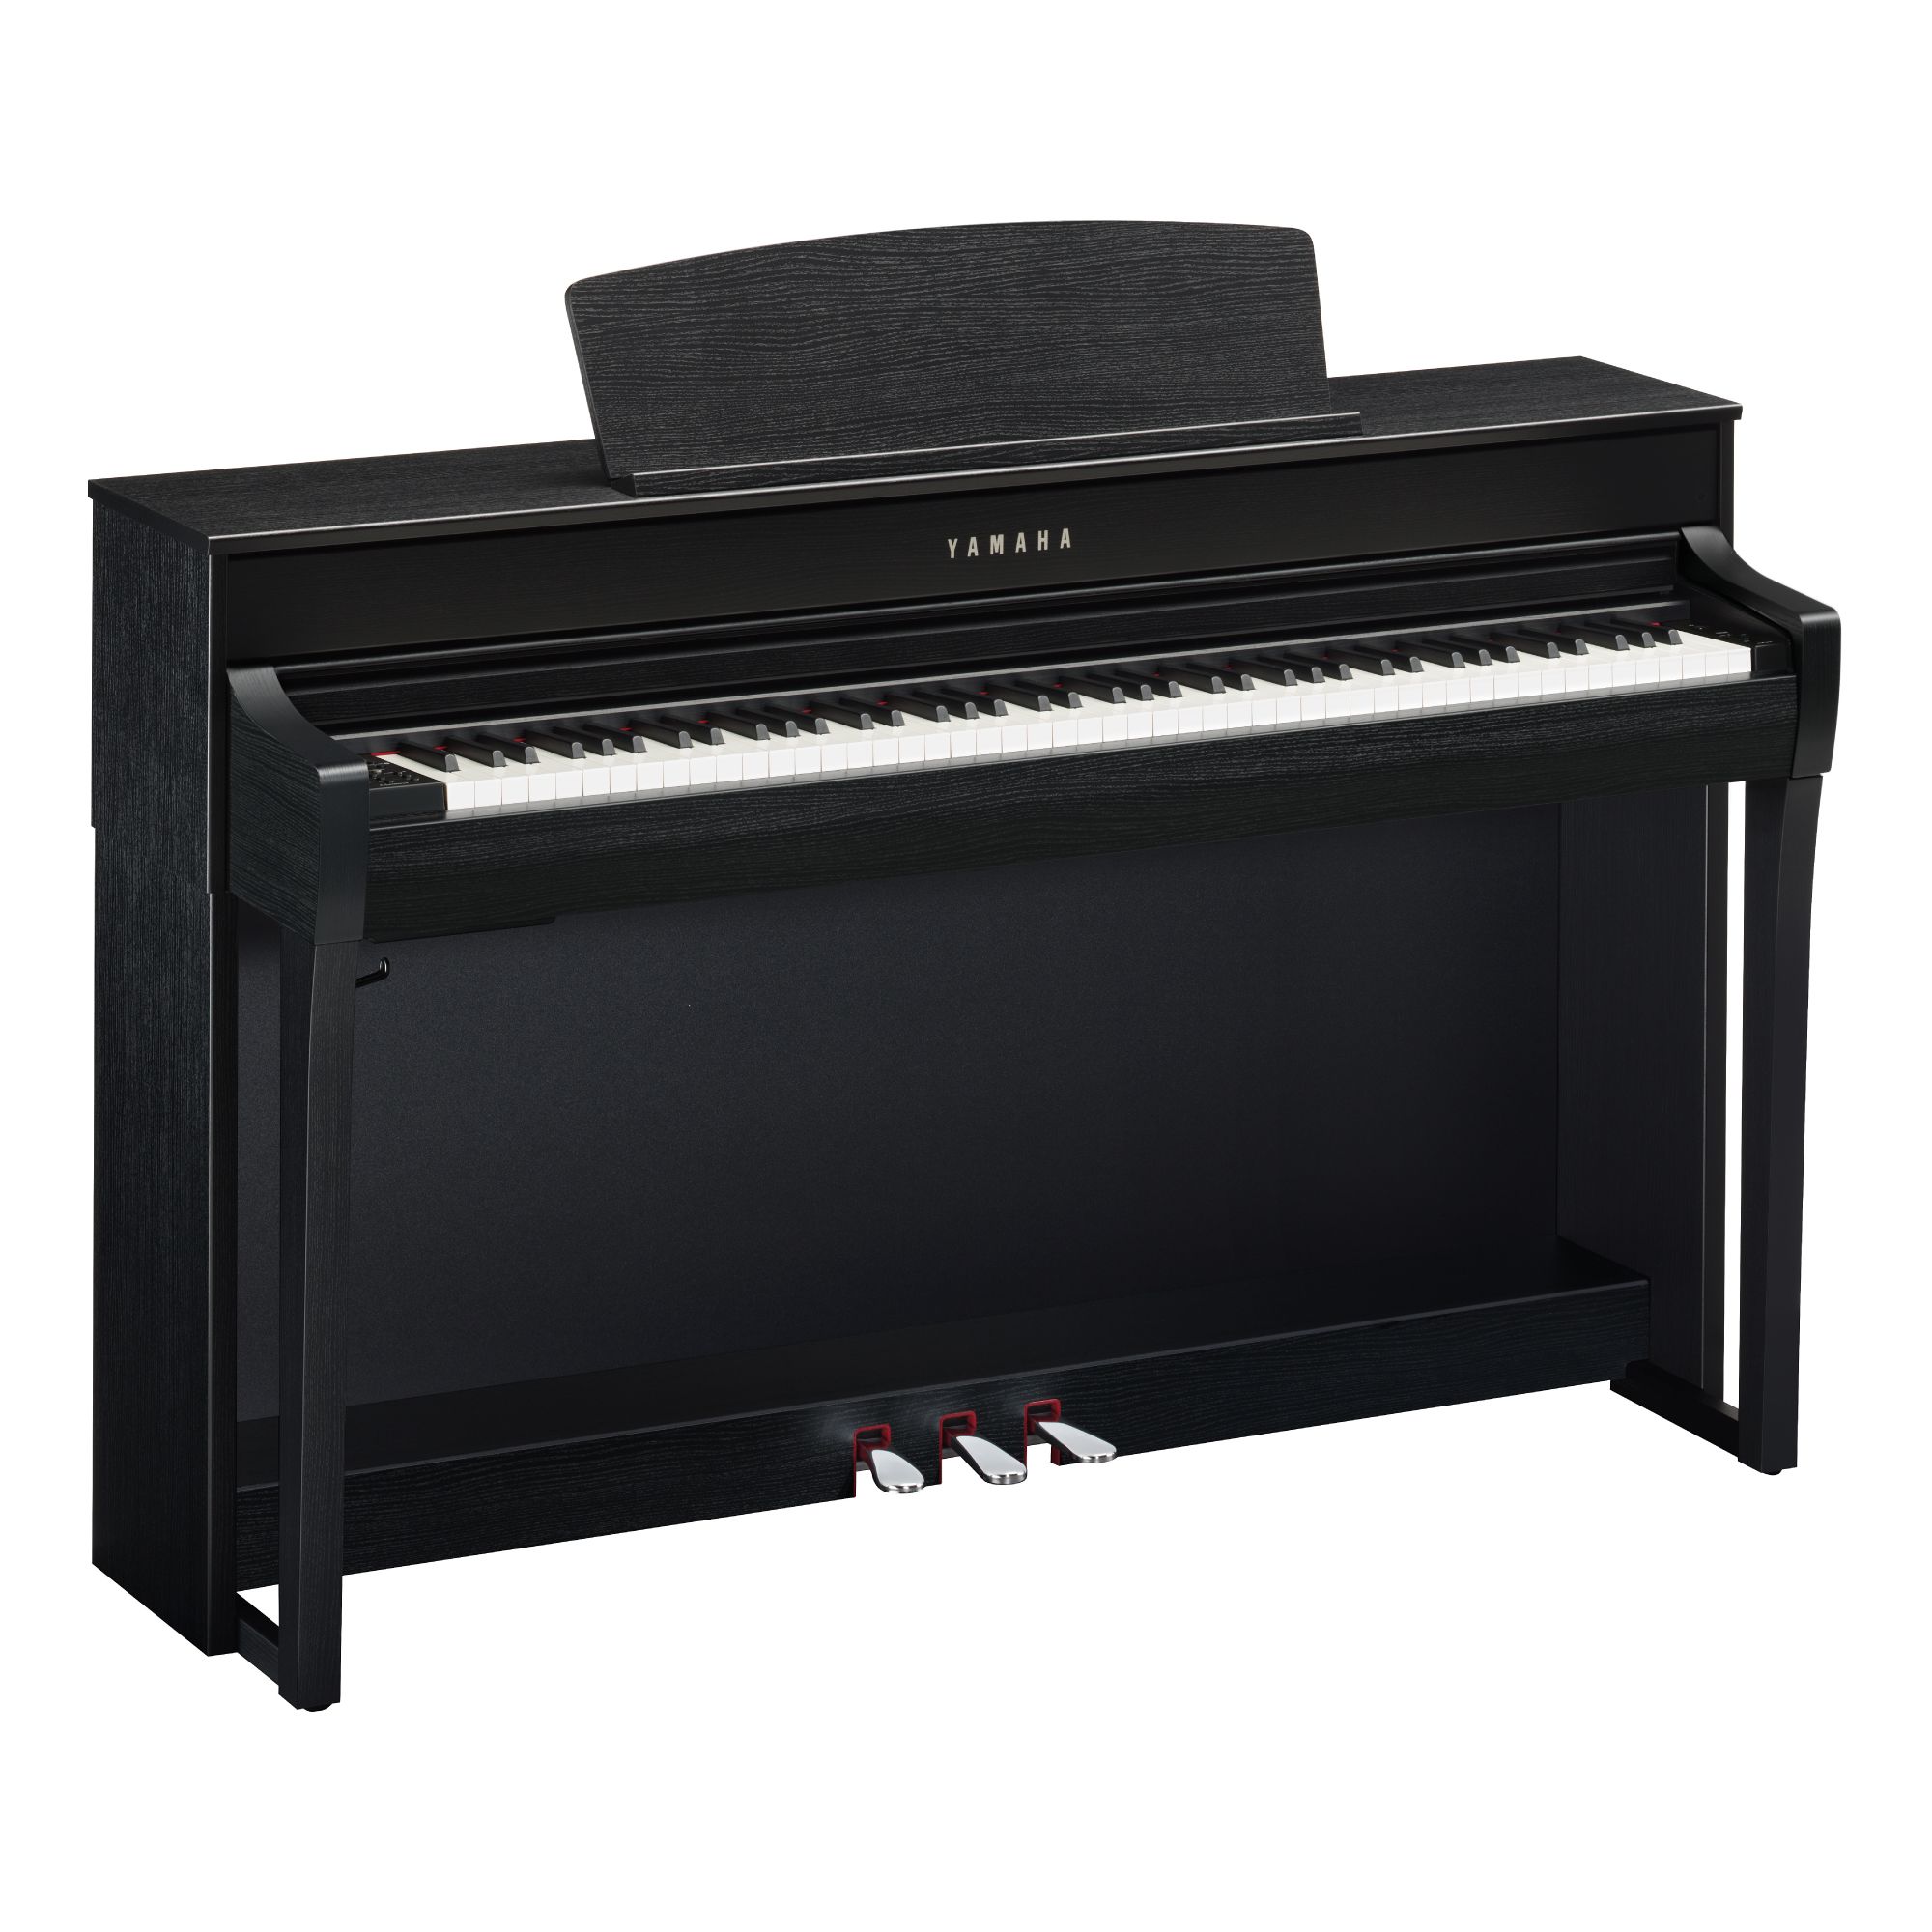 3/26まで出品 ヤマハ電子ピアノ クラビノーバCLP-745R 現行最新モデル